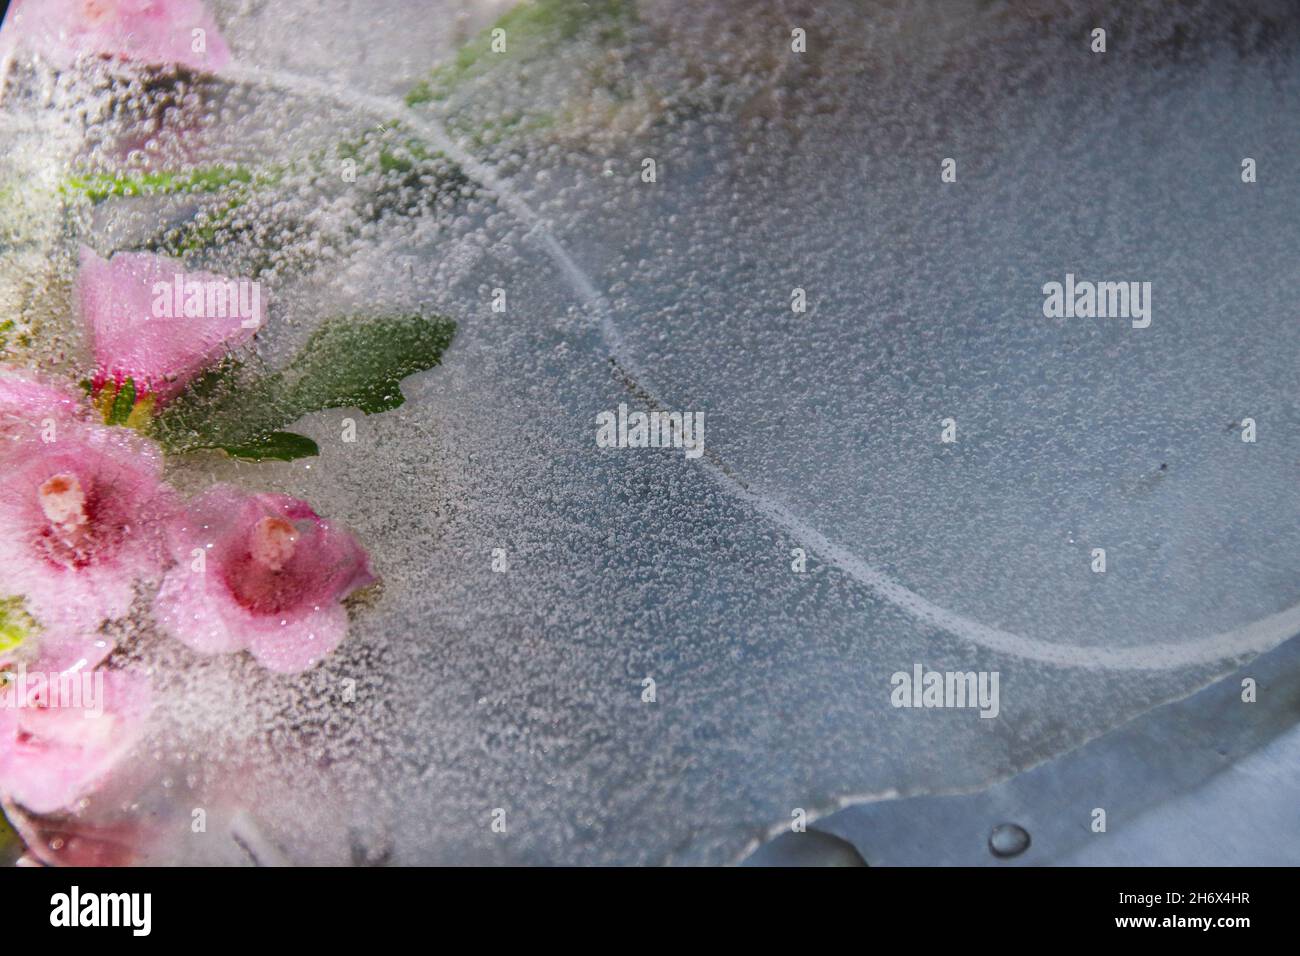 Im auftauenden Eis vereiste rosa Blüten, die das Konzept des Winters zeigen, der dem Frühling oder Saisonwechsel Platz macht Stockfoto